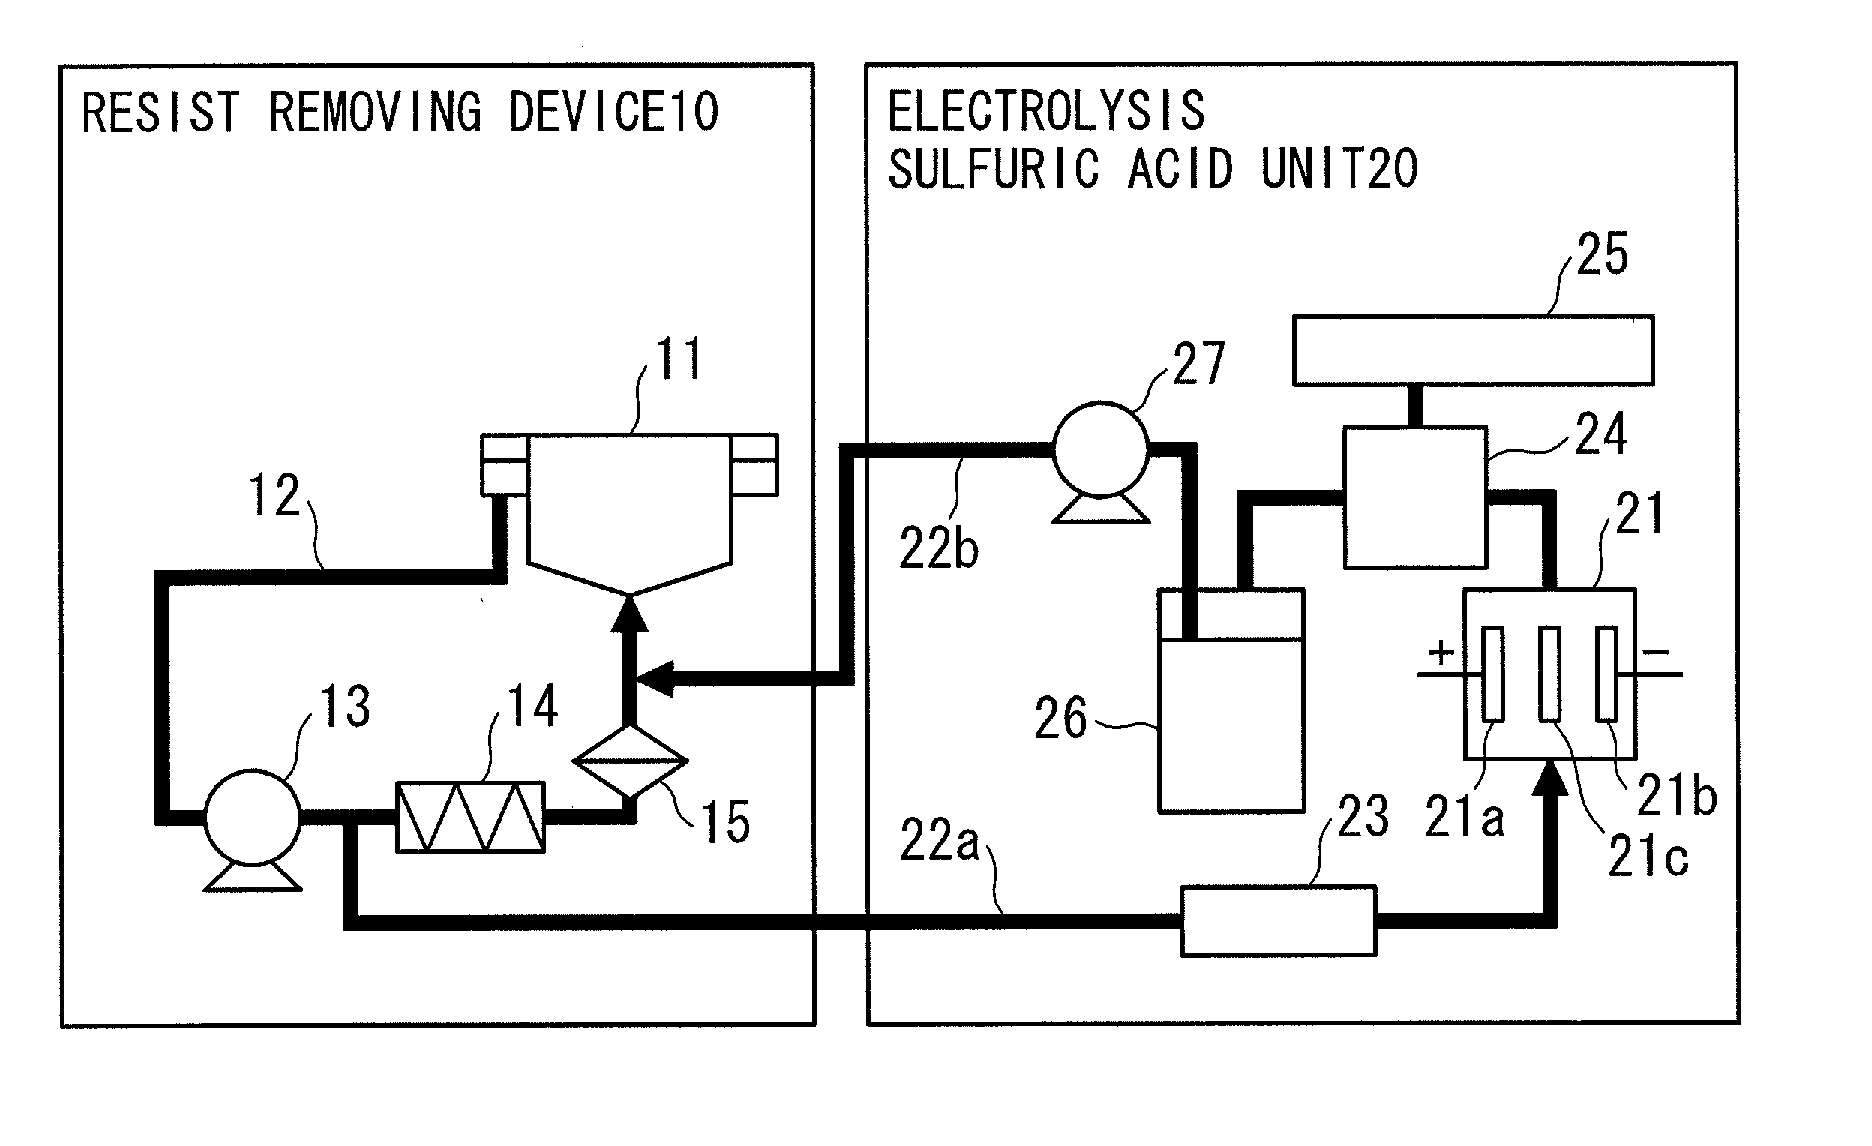 Electrolysis method